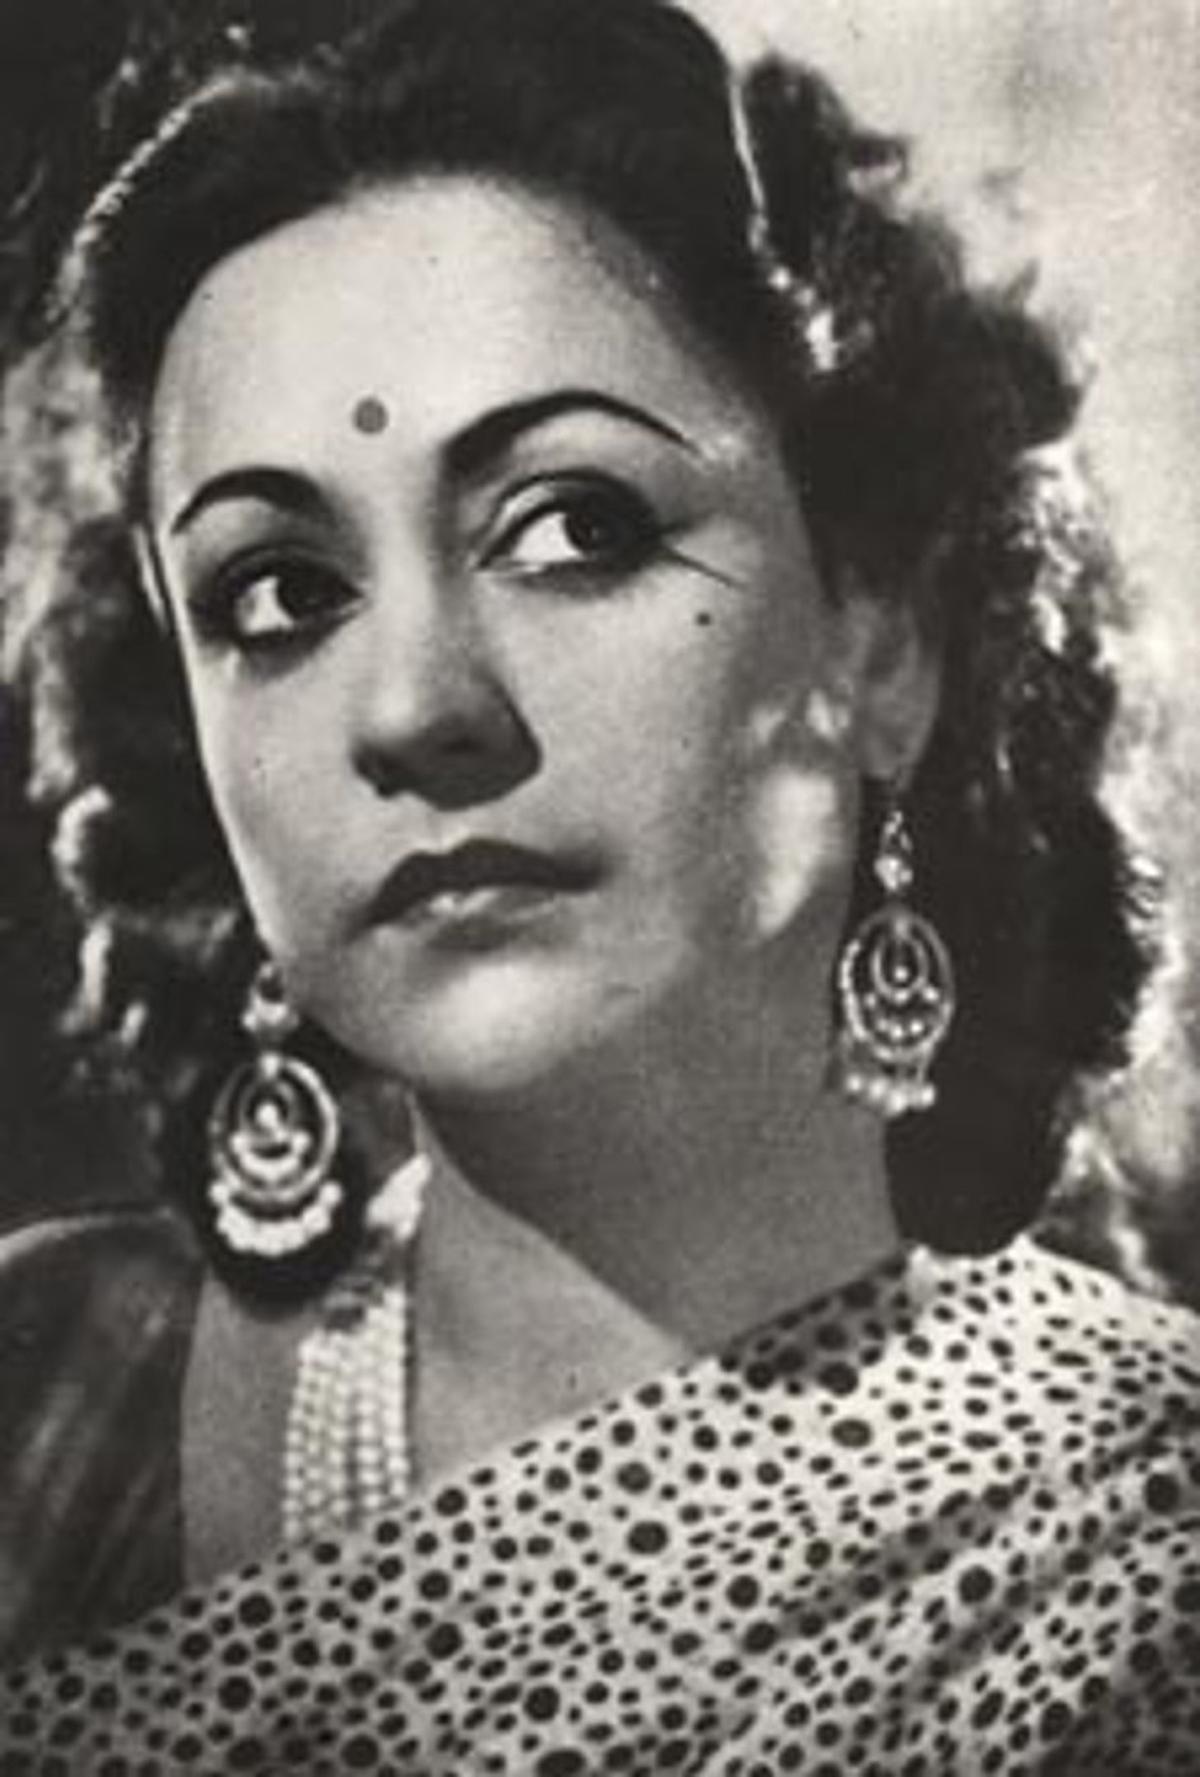 शमशाद बेगम, प्रसिद्ध गायिका, जो कव्वाली गाती थीं